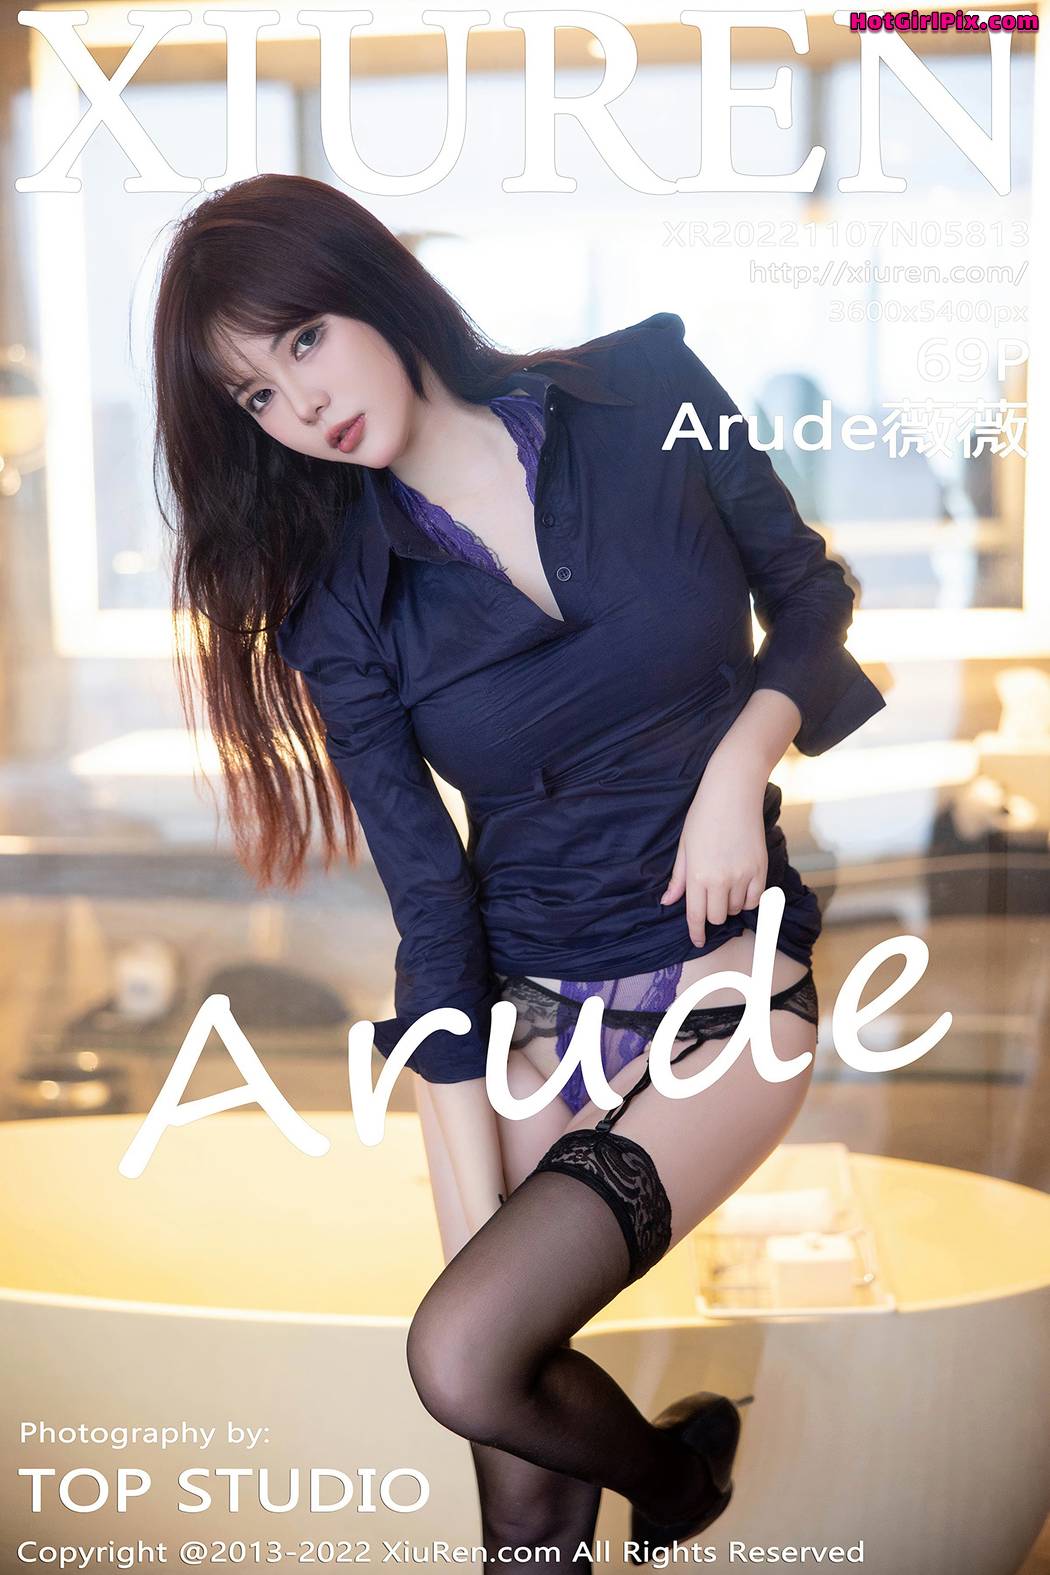 [XIUREN] No.5813 Arude薇薇 Cover Photo